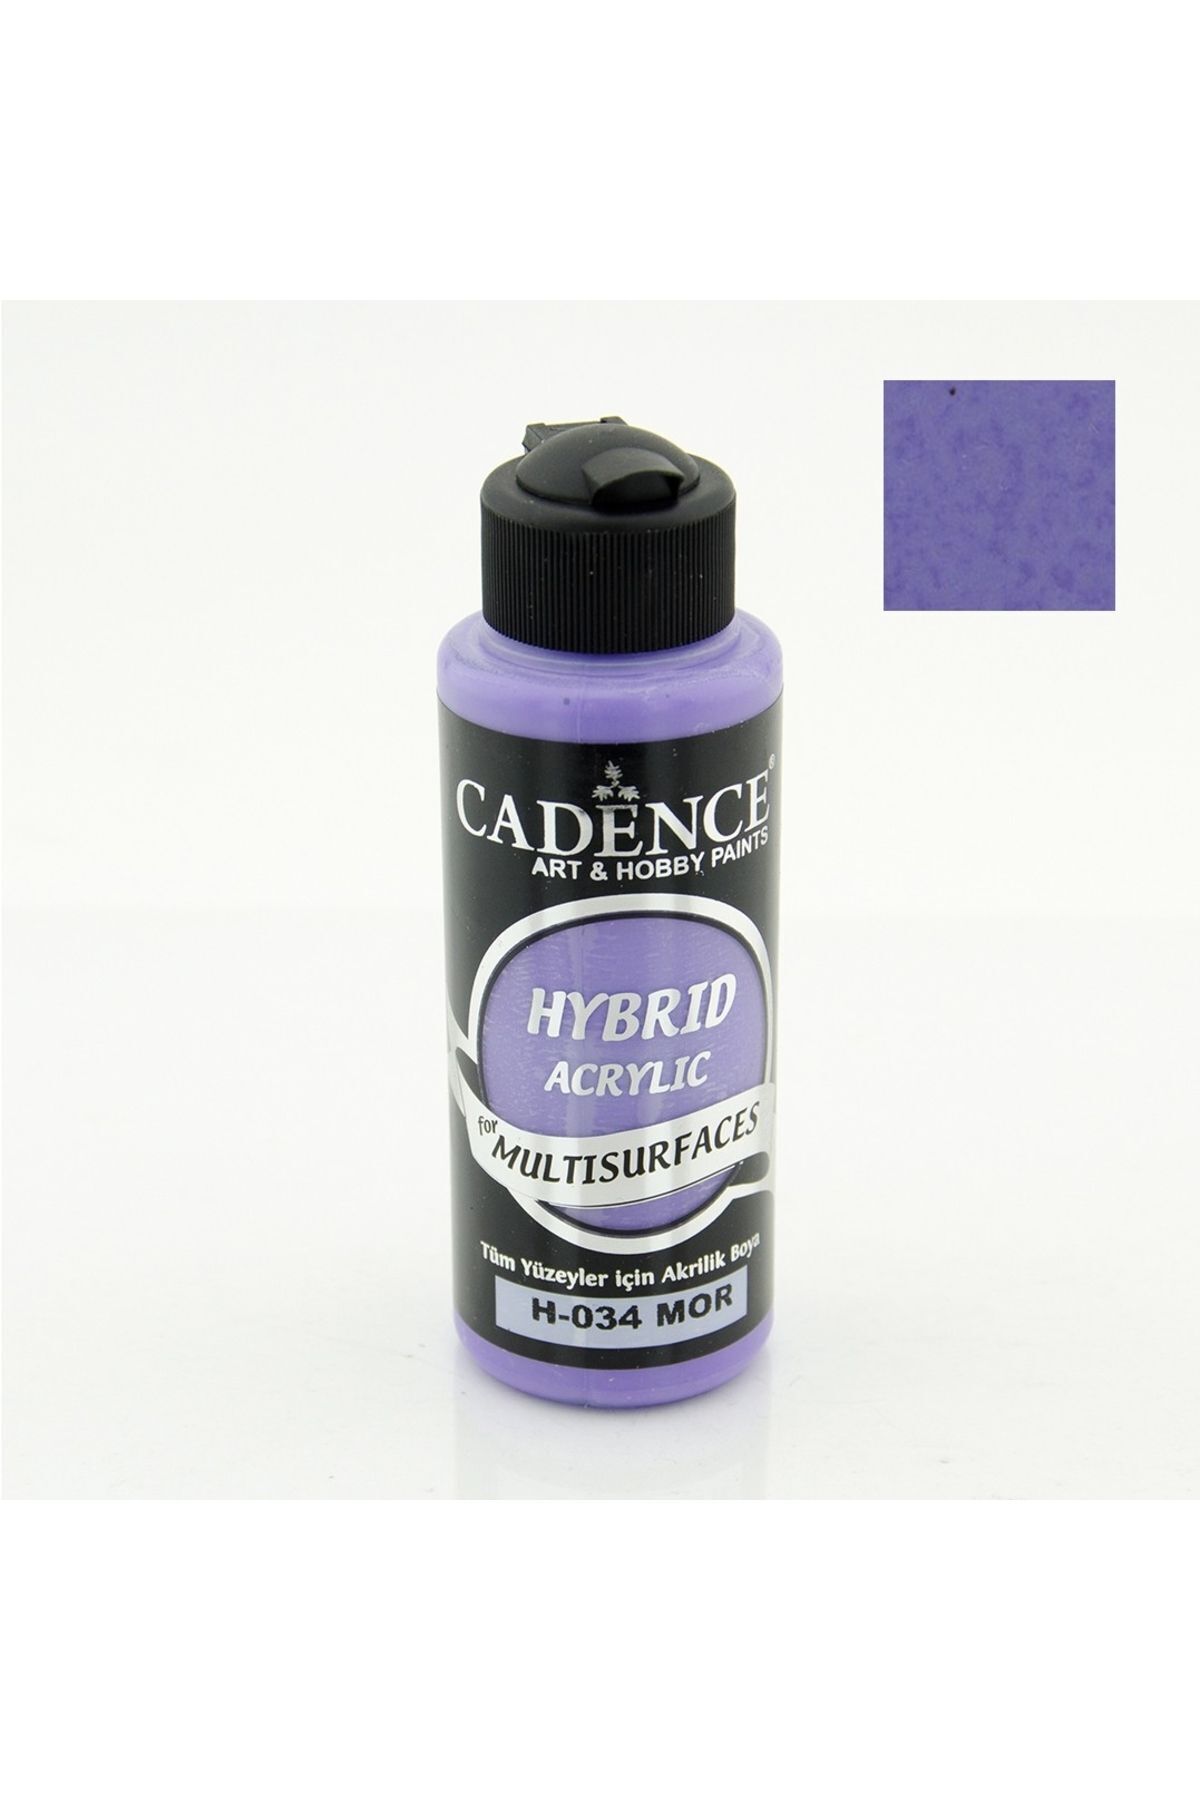 Cadence Hybrid Akr. Multisurfaces H-034 Mor 120ml